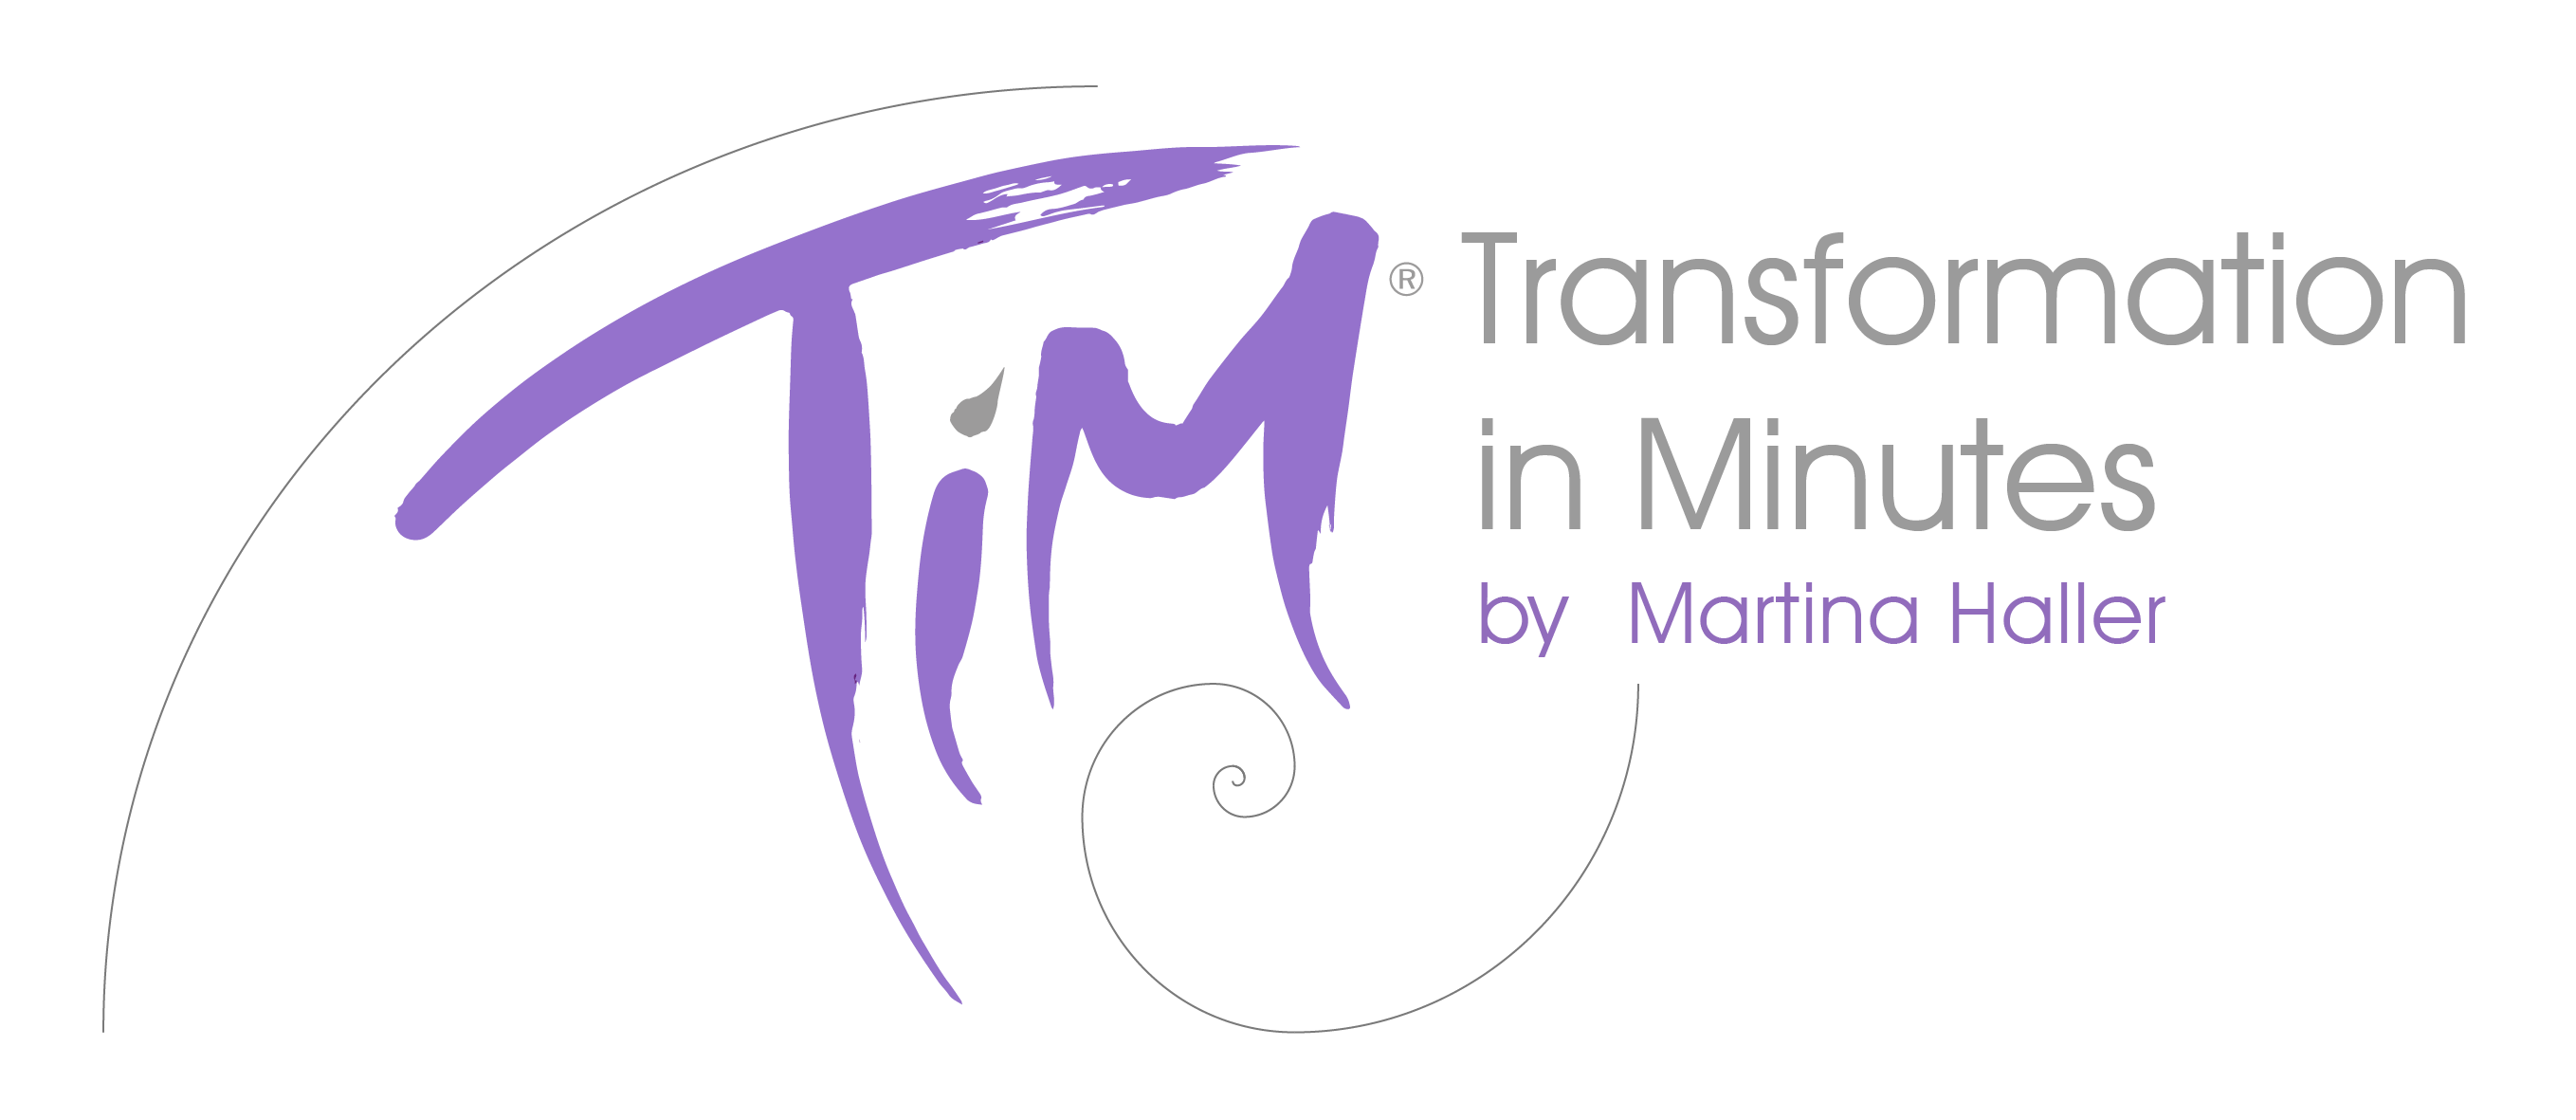 TIM-fibo-final-transparent-2-final